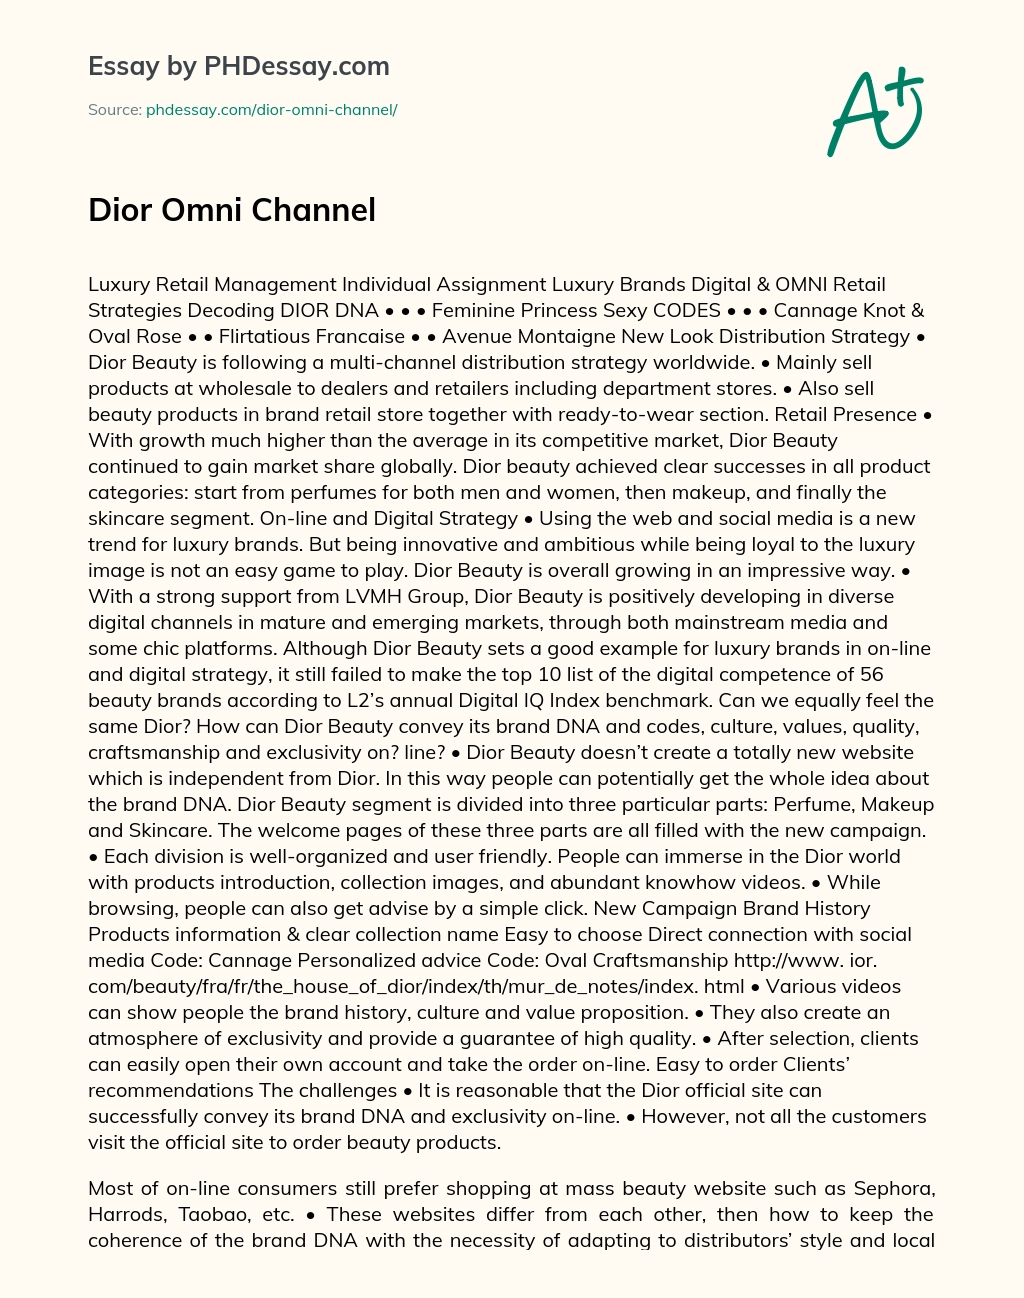 Luxury Retail Management: Dior, Omni, Channel essay